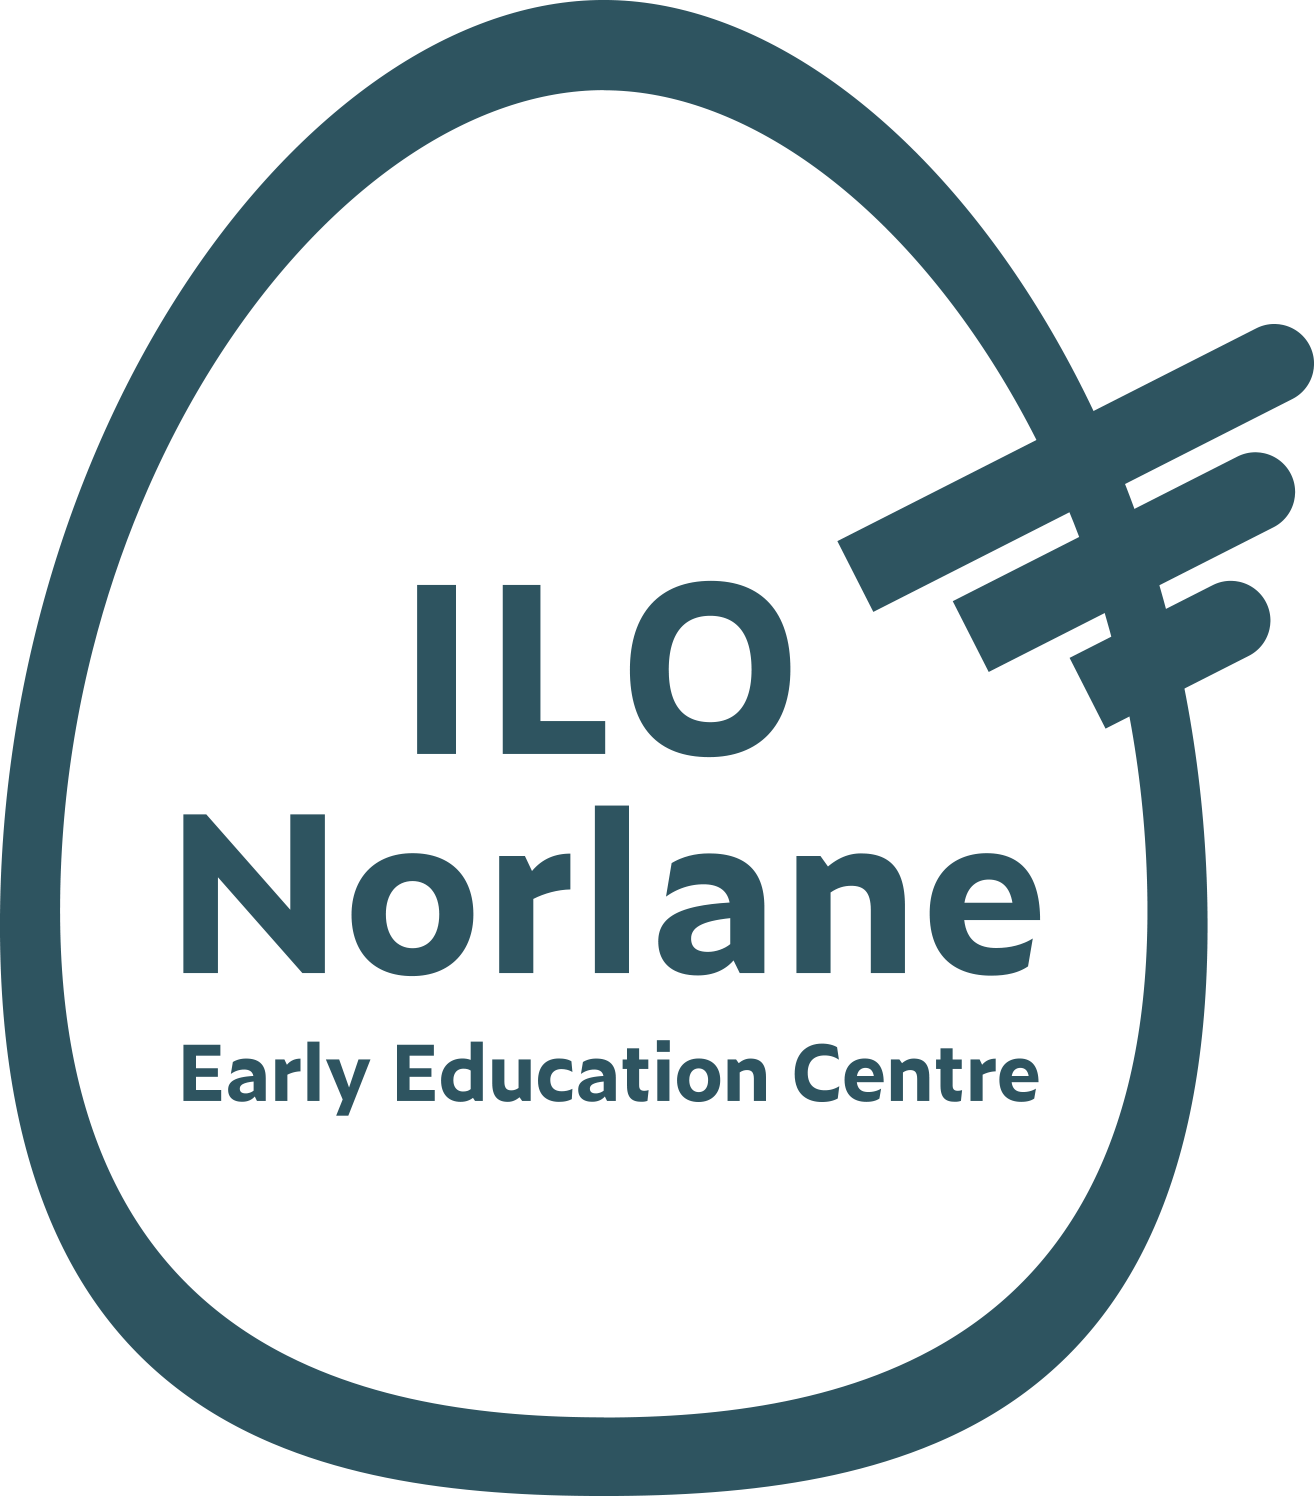 ILO-210125-LOGO-ILO Norlane Logo - Turquoise-CB-v001.png